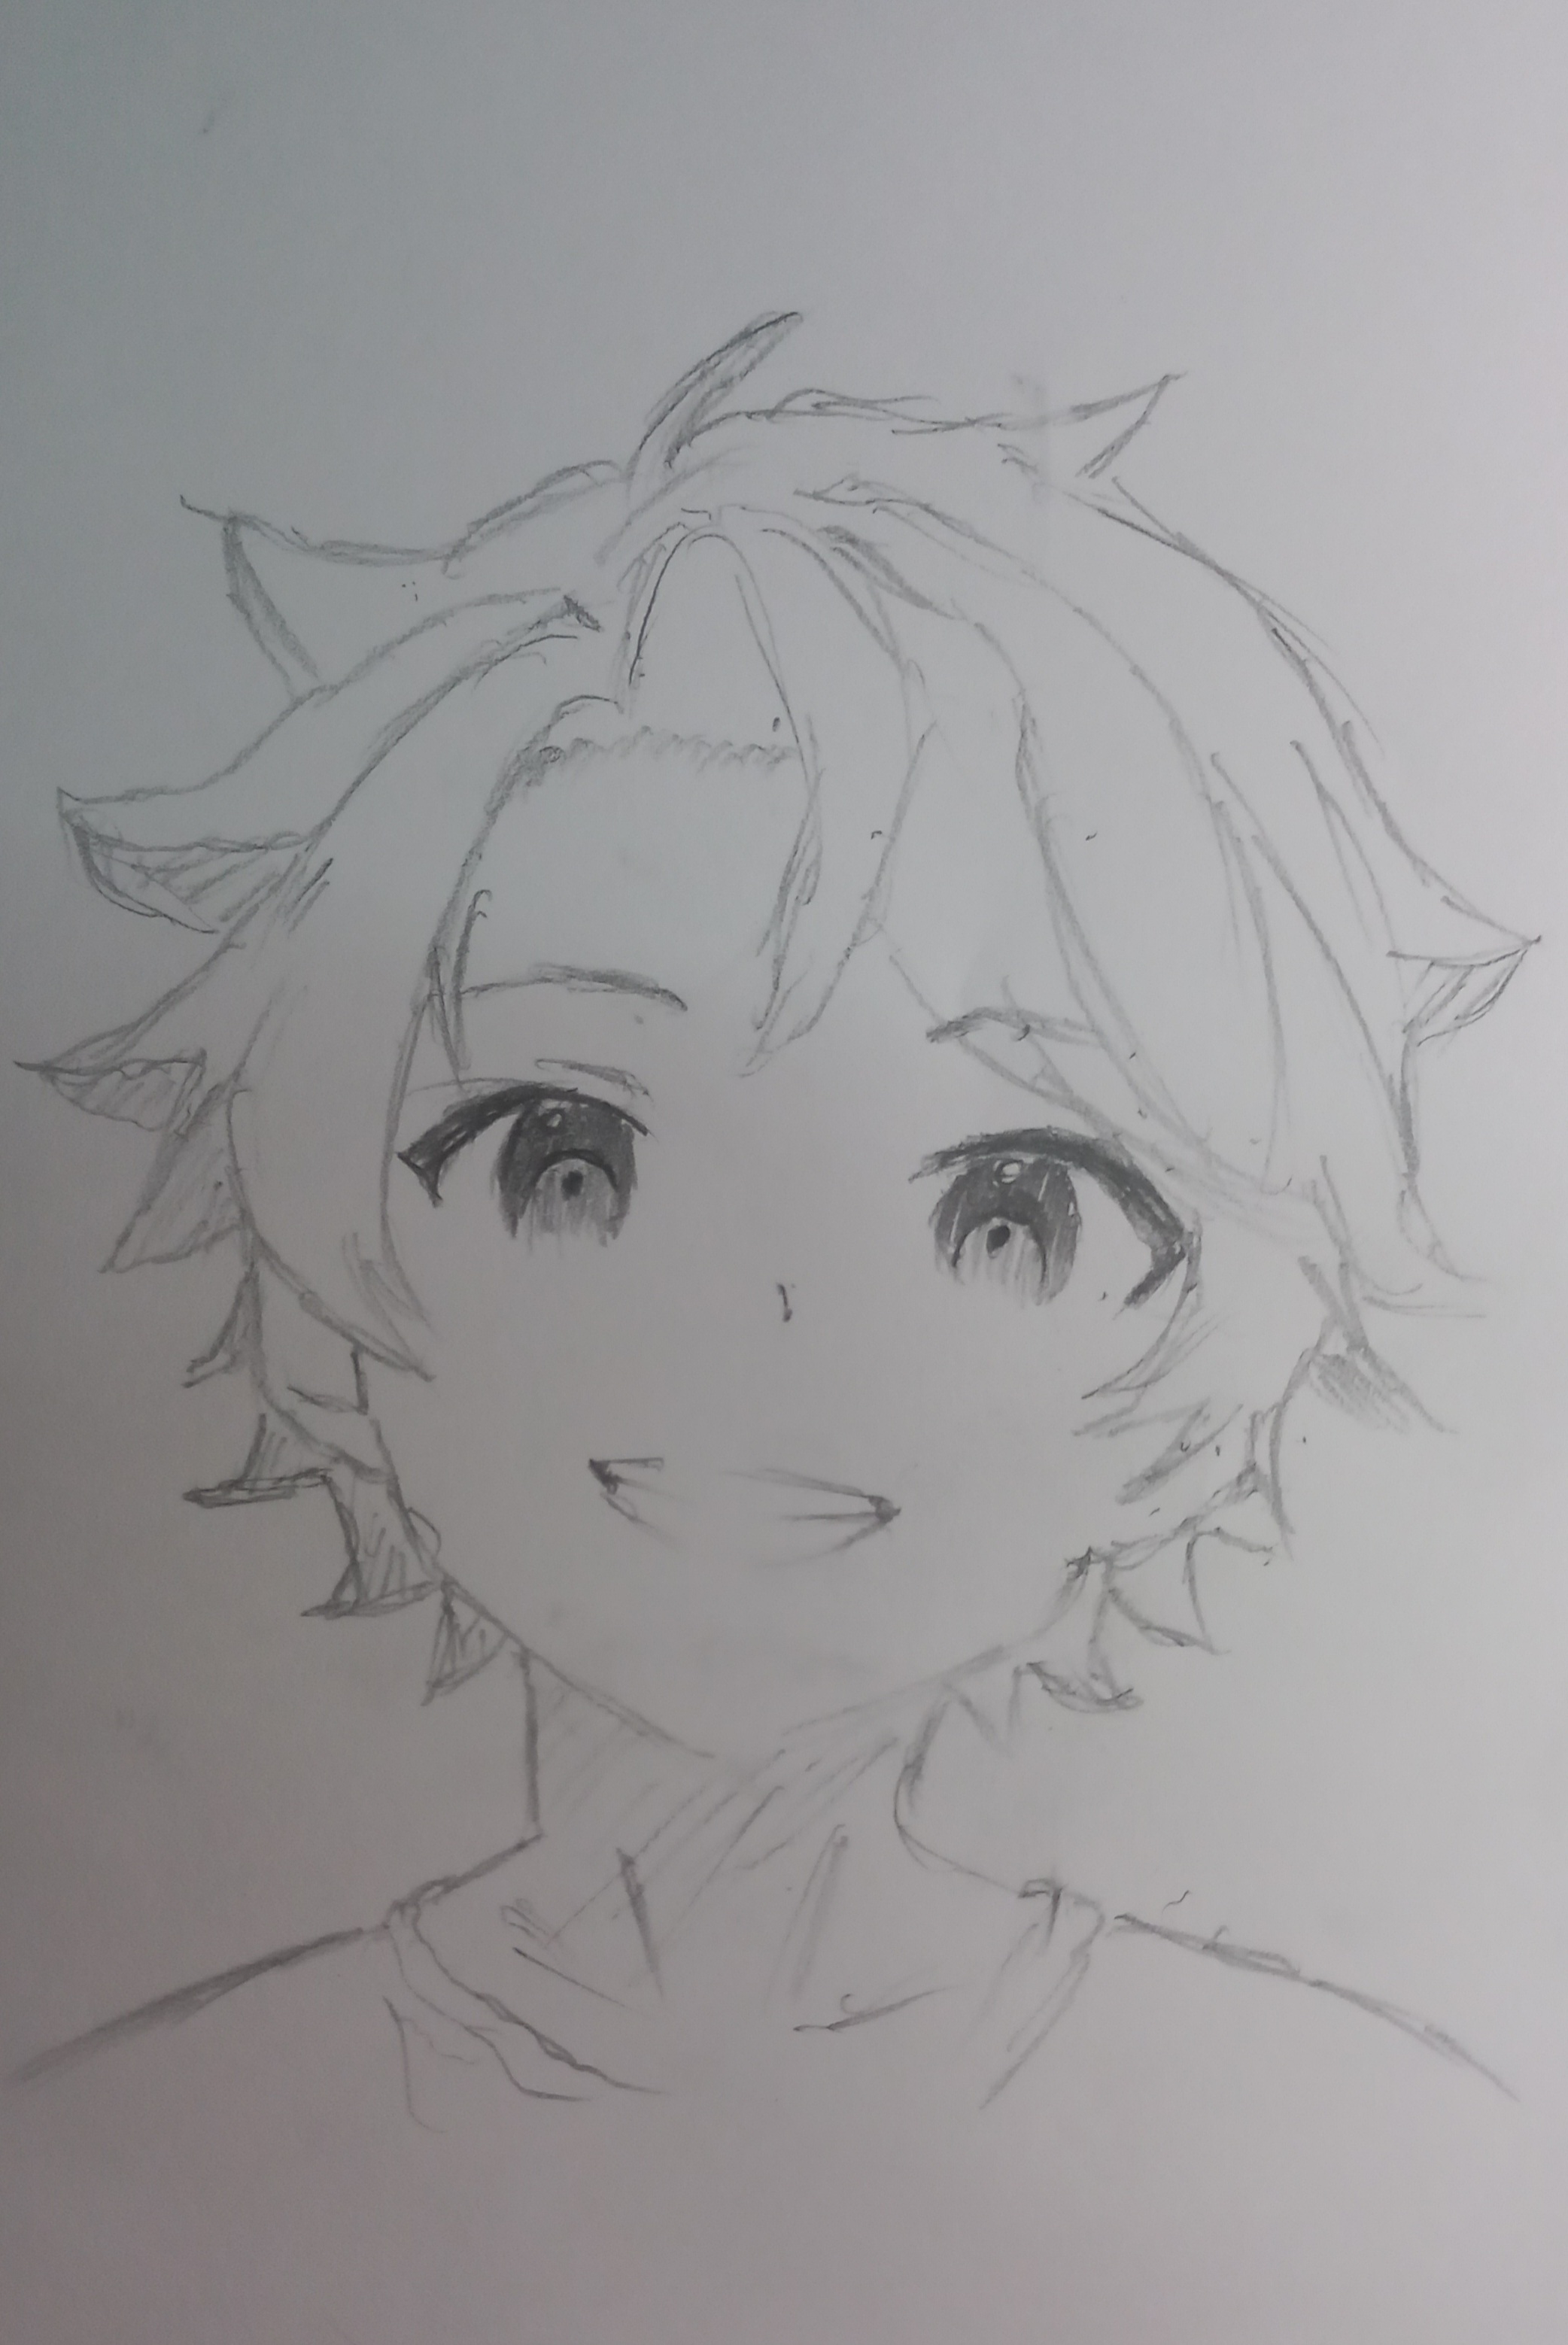 Anime Boy Gray Smile Face